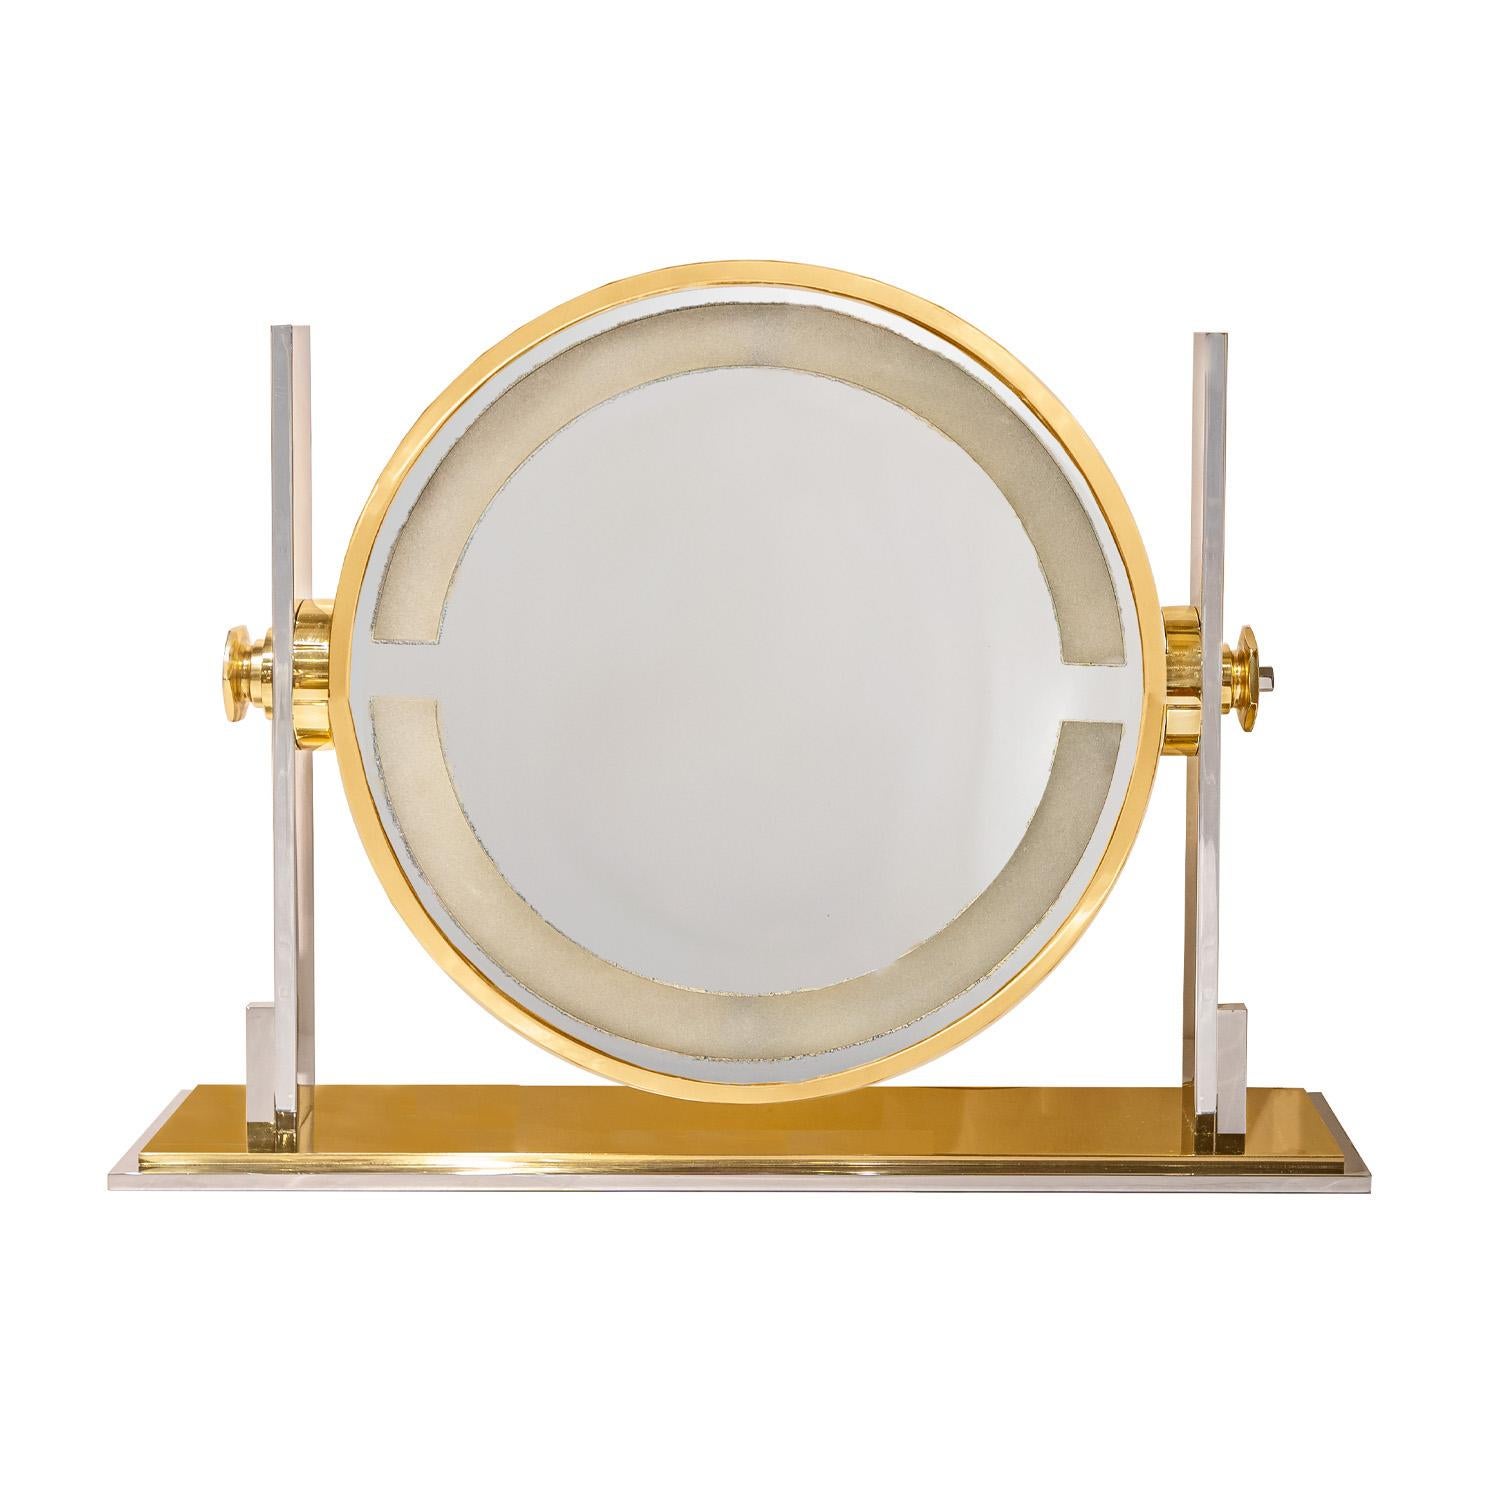 Très grand miroir grossissant réglable en acier et laiton poli, fabriqué avec soin par Karl Springer, États-Unis, années 1980. Ce miroir a été entièrement restauré - la lumière a été remplacée par un composant LED qui durera très longtemps.  Le